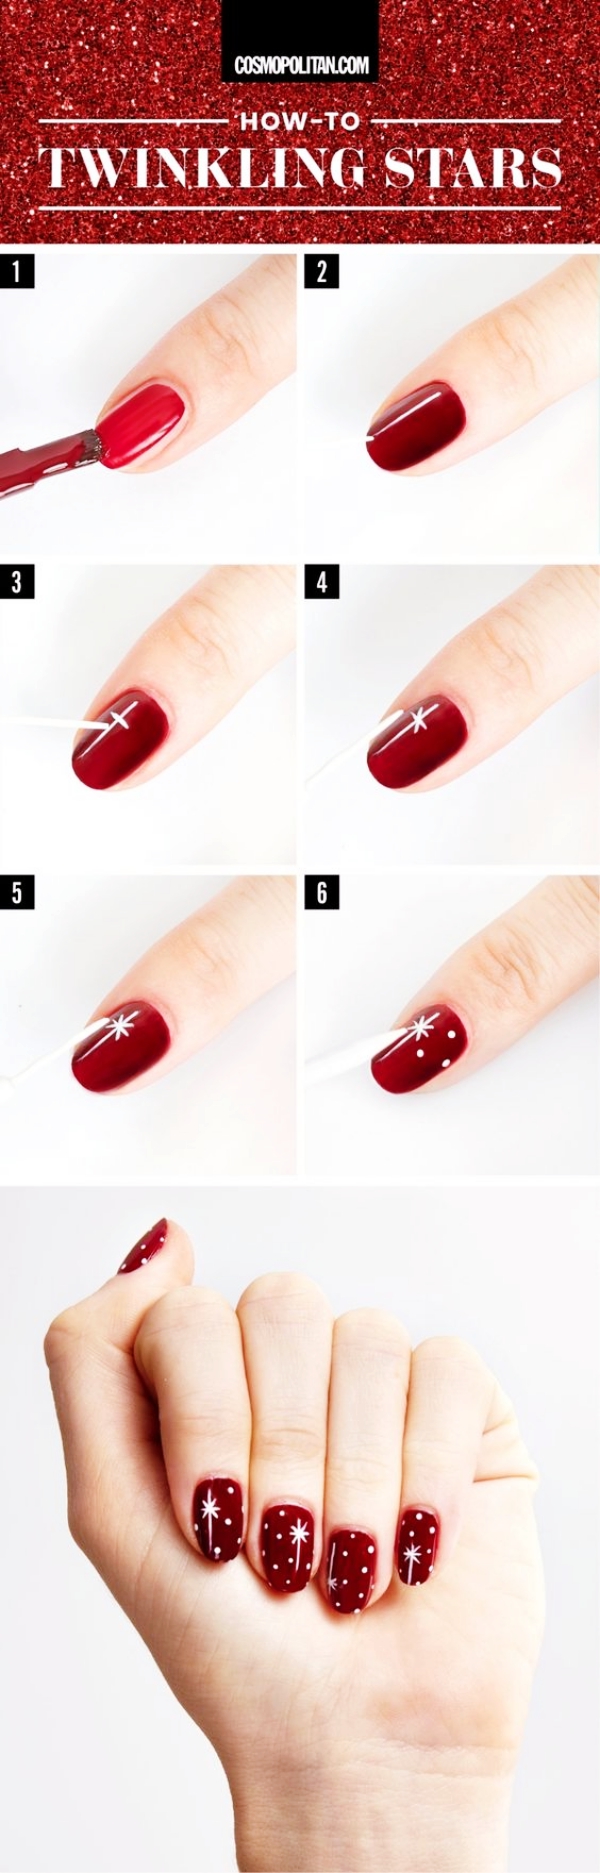 Red-Nail-Art-And-Polish-Designs